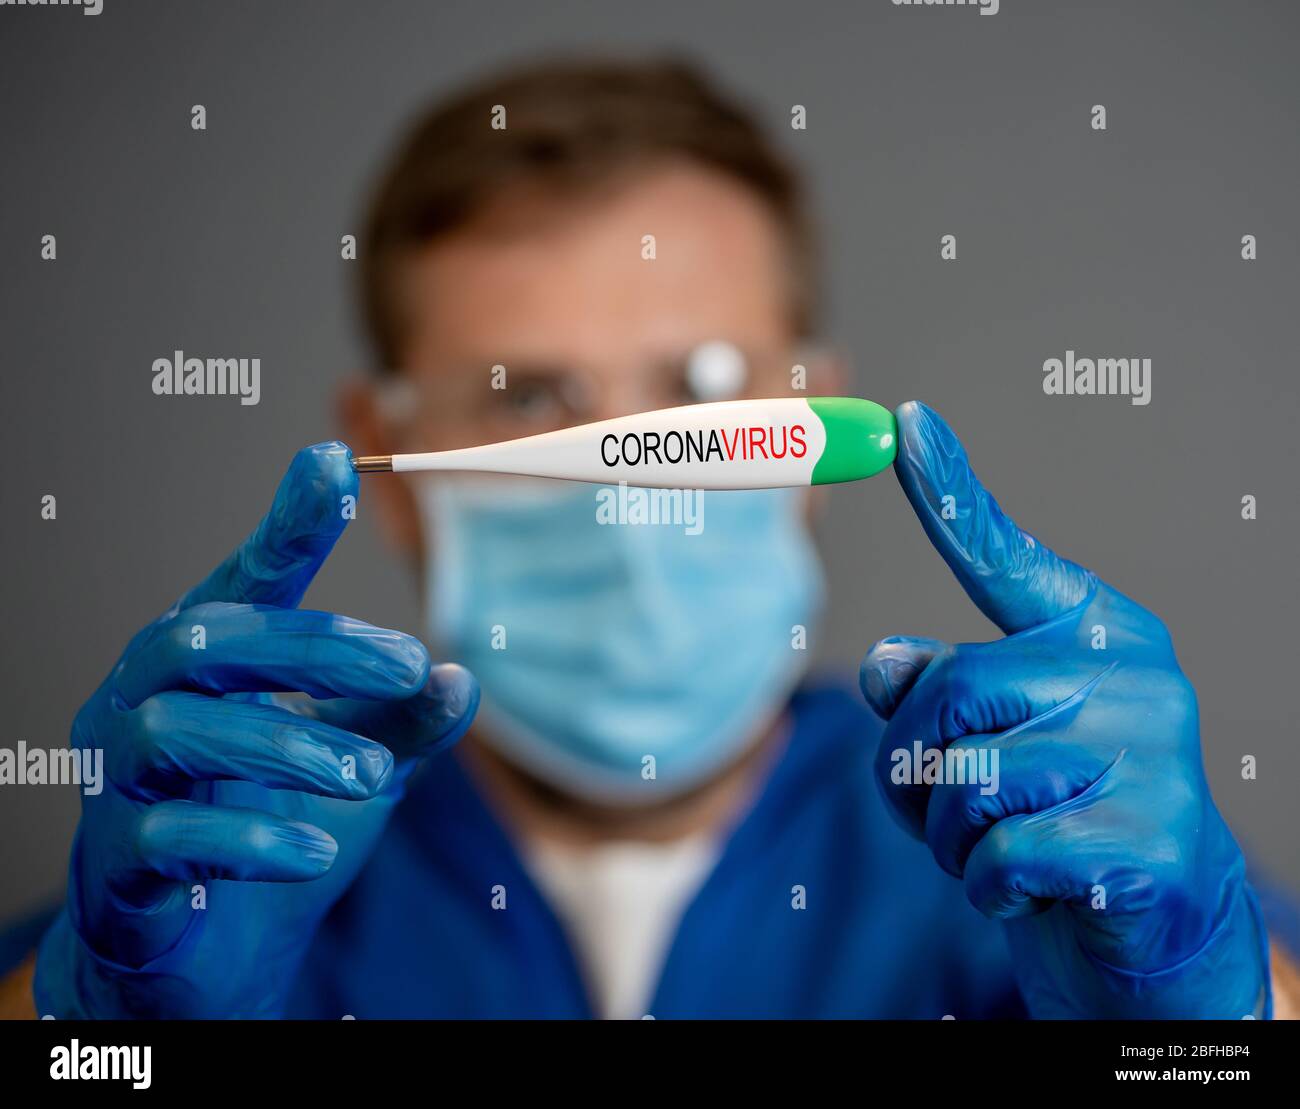 COVID-19 Ausbruch. Arzt hält Thermometer. Schützen Sie sich und verhindern Sie die Ausbreitung des Coronavirus. Wenn Sie Symptome haben, Fieber, Husten und Diff Stockfoto